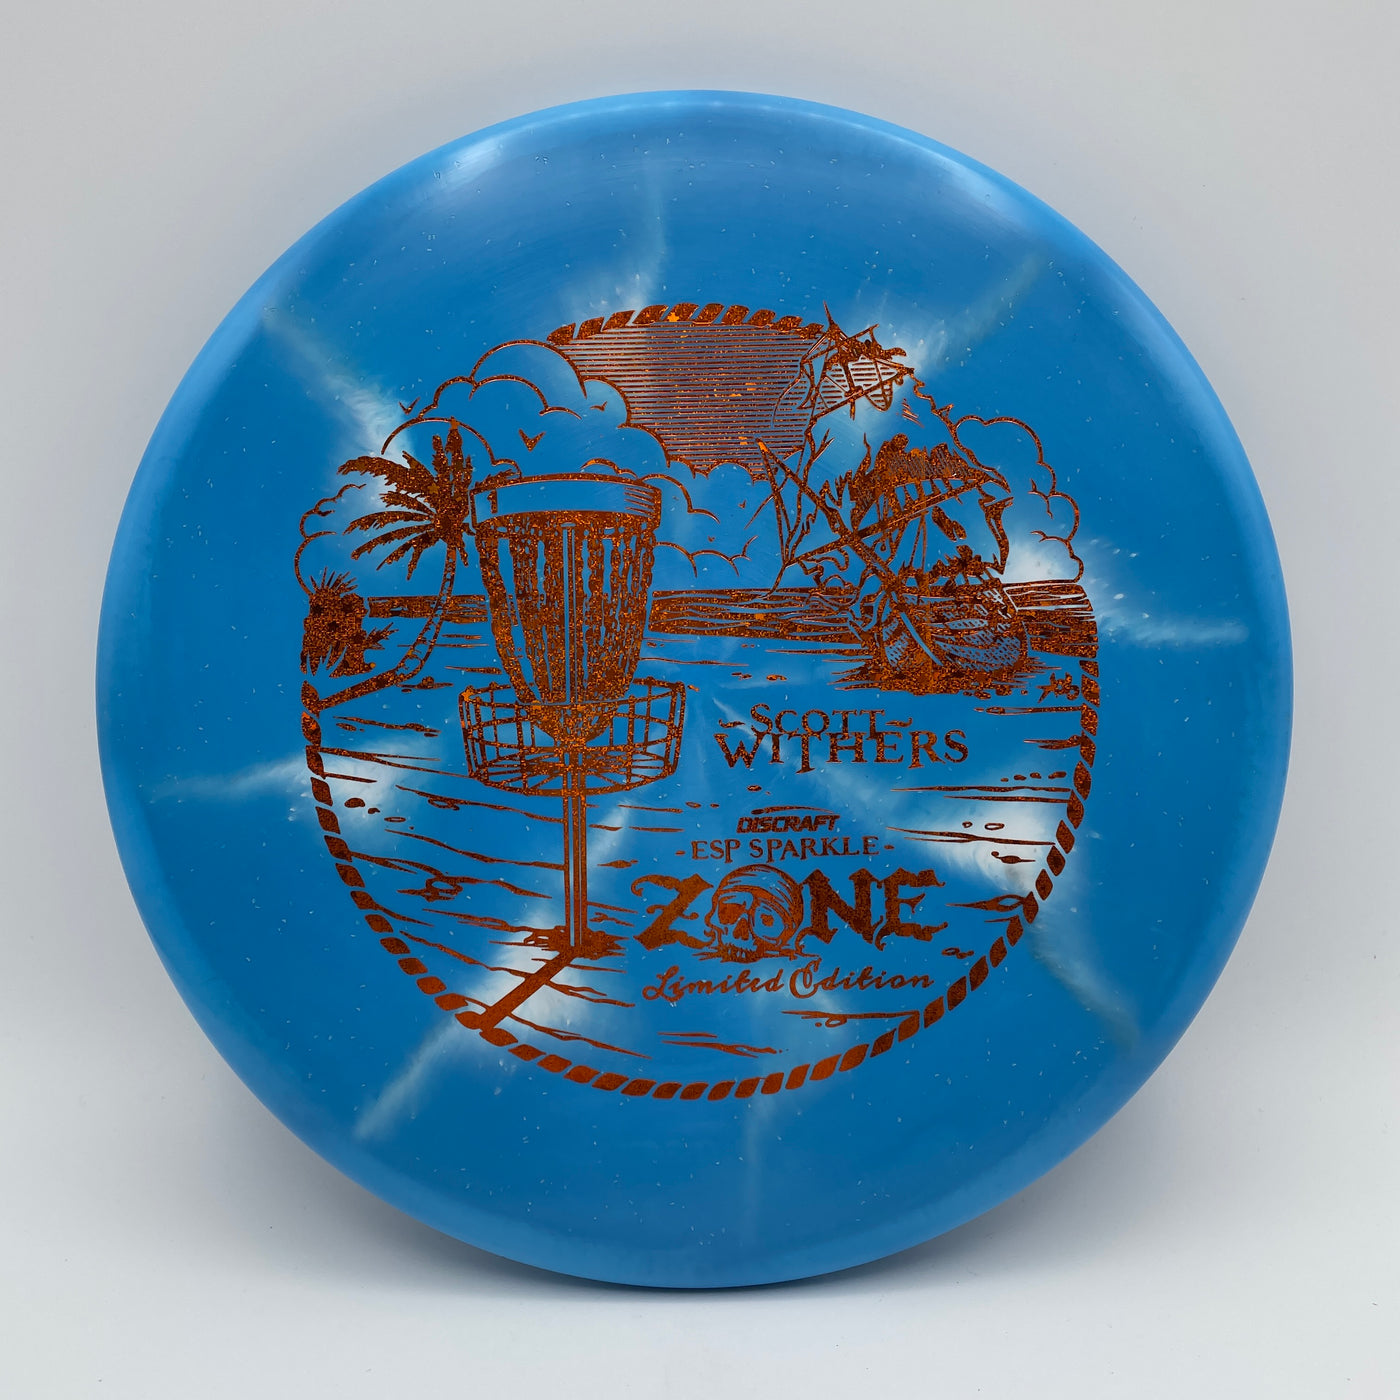 Scott Withers ESP Sparkle Zone - Orange Hidden Stars Stamp